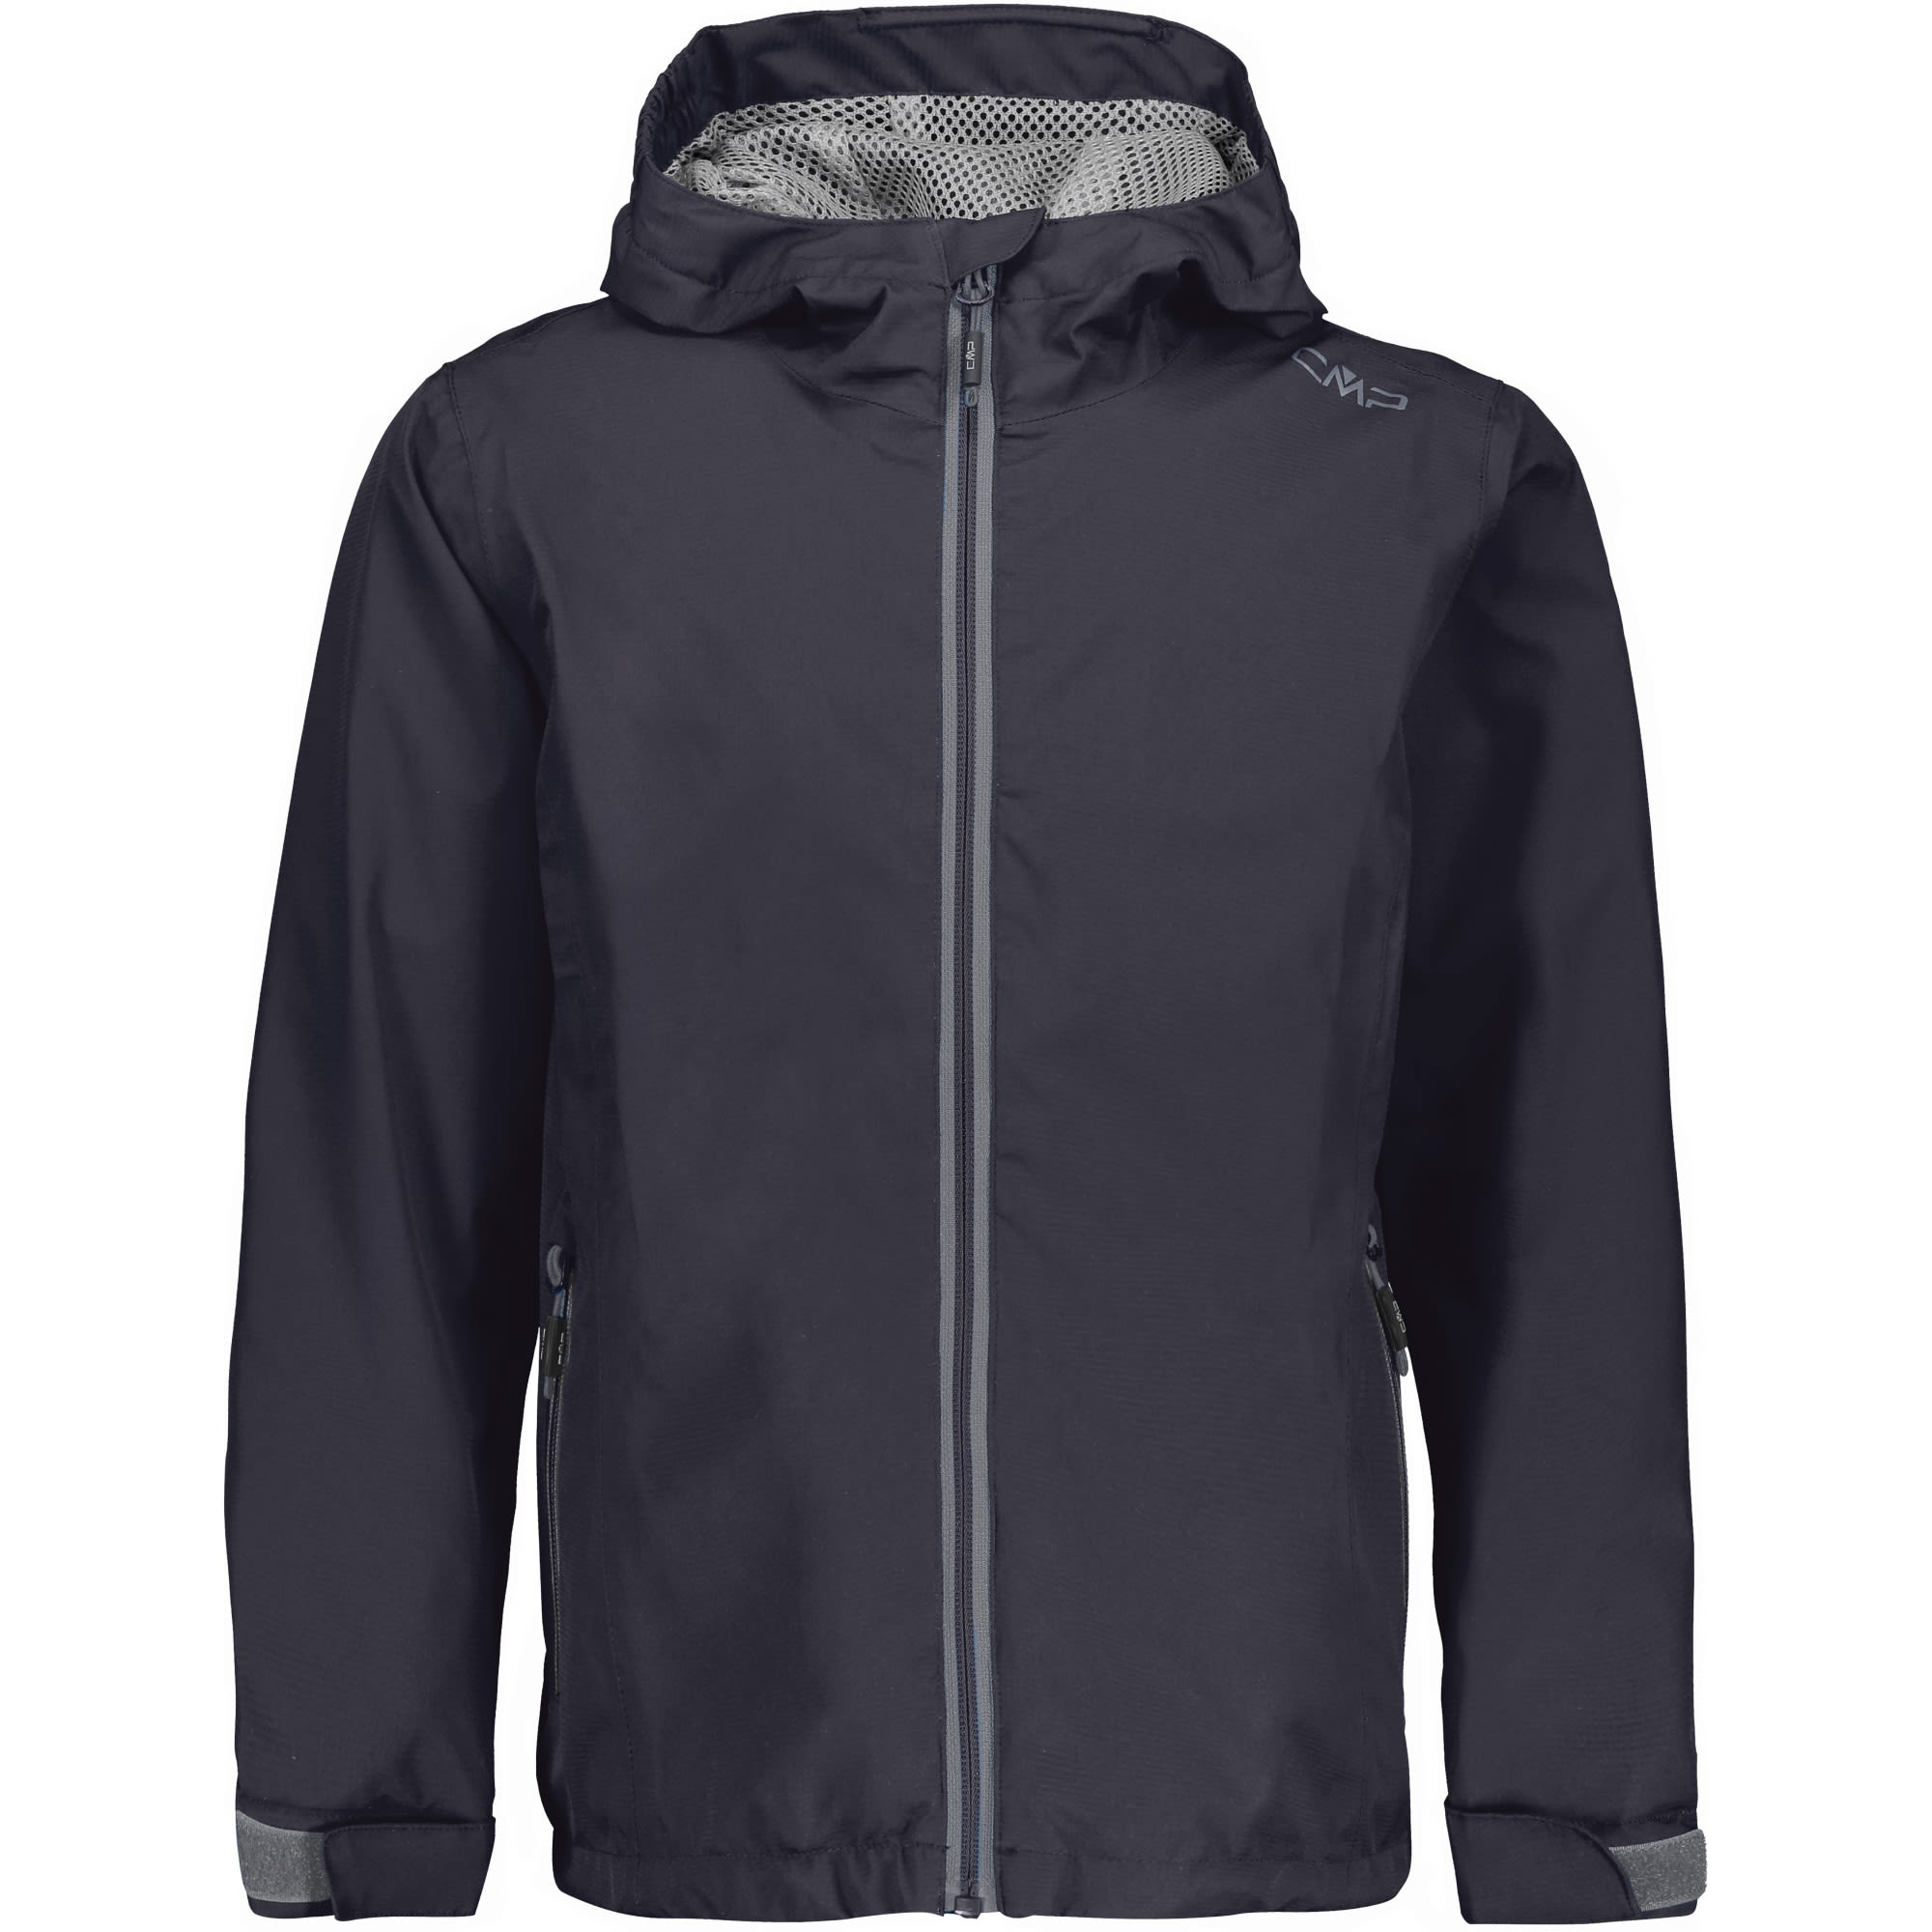 CMP BOY Jacket FIX Hood Schwarz- Male Regenjacken und Hardshells- Grsse 104 - Farbe Antracite unter CMP